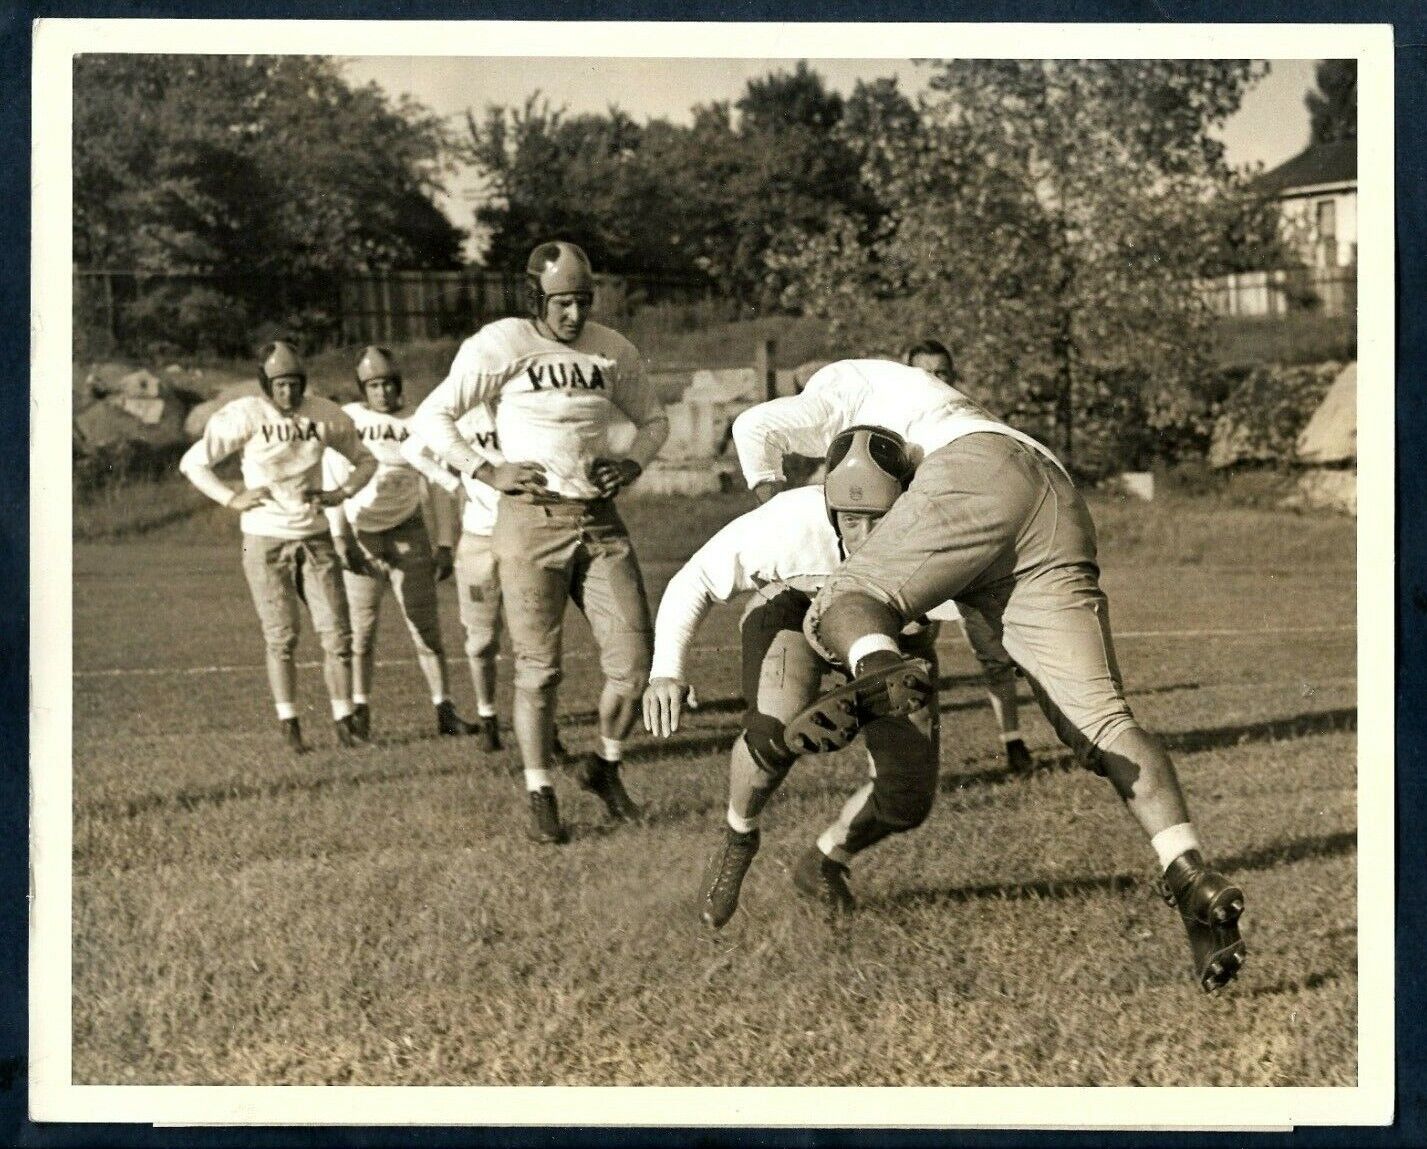 NFL PLAYERS ROY HUGGINGS GENE HARLOW & OTHERS VANDERBILT UNIV 1940s Photo Y 201